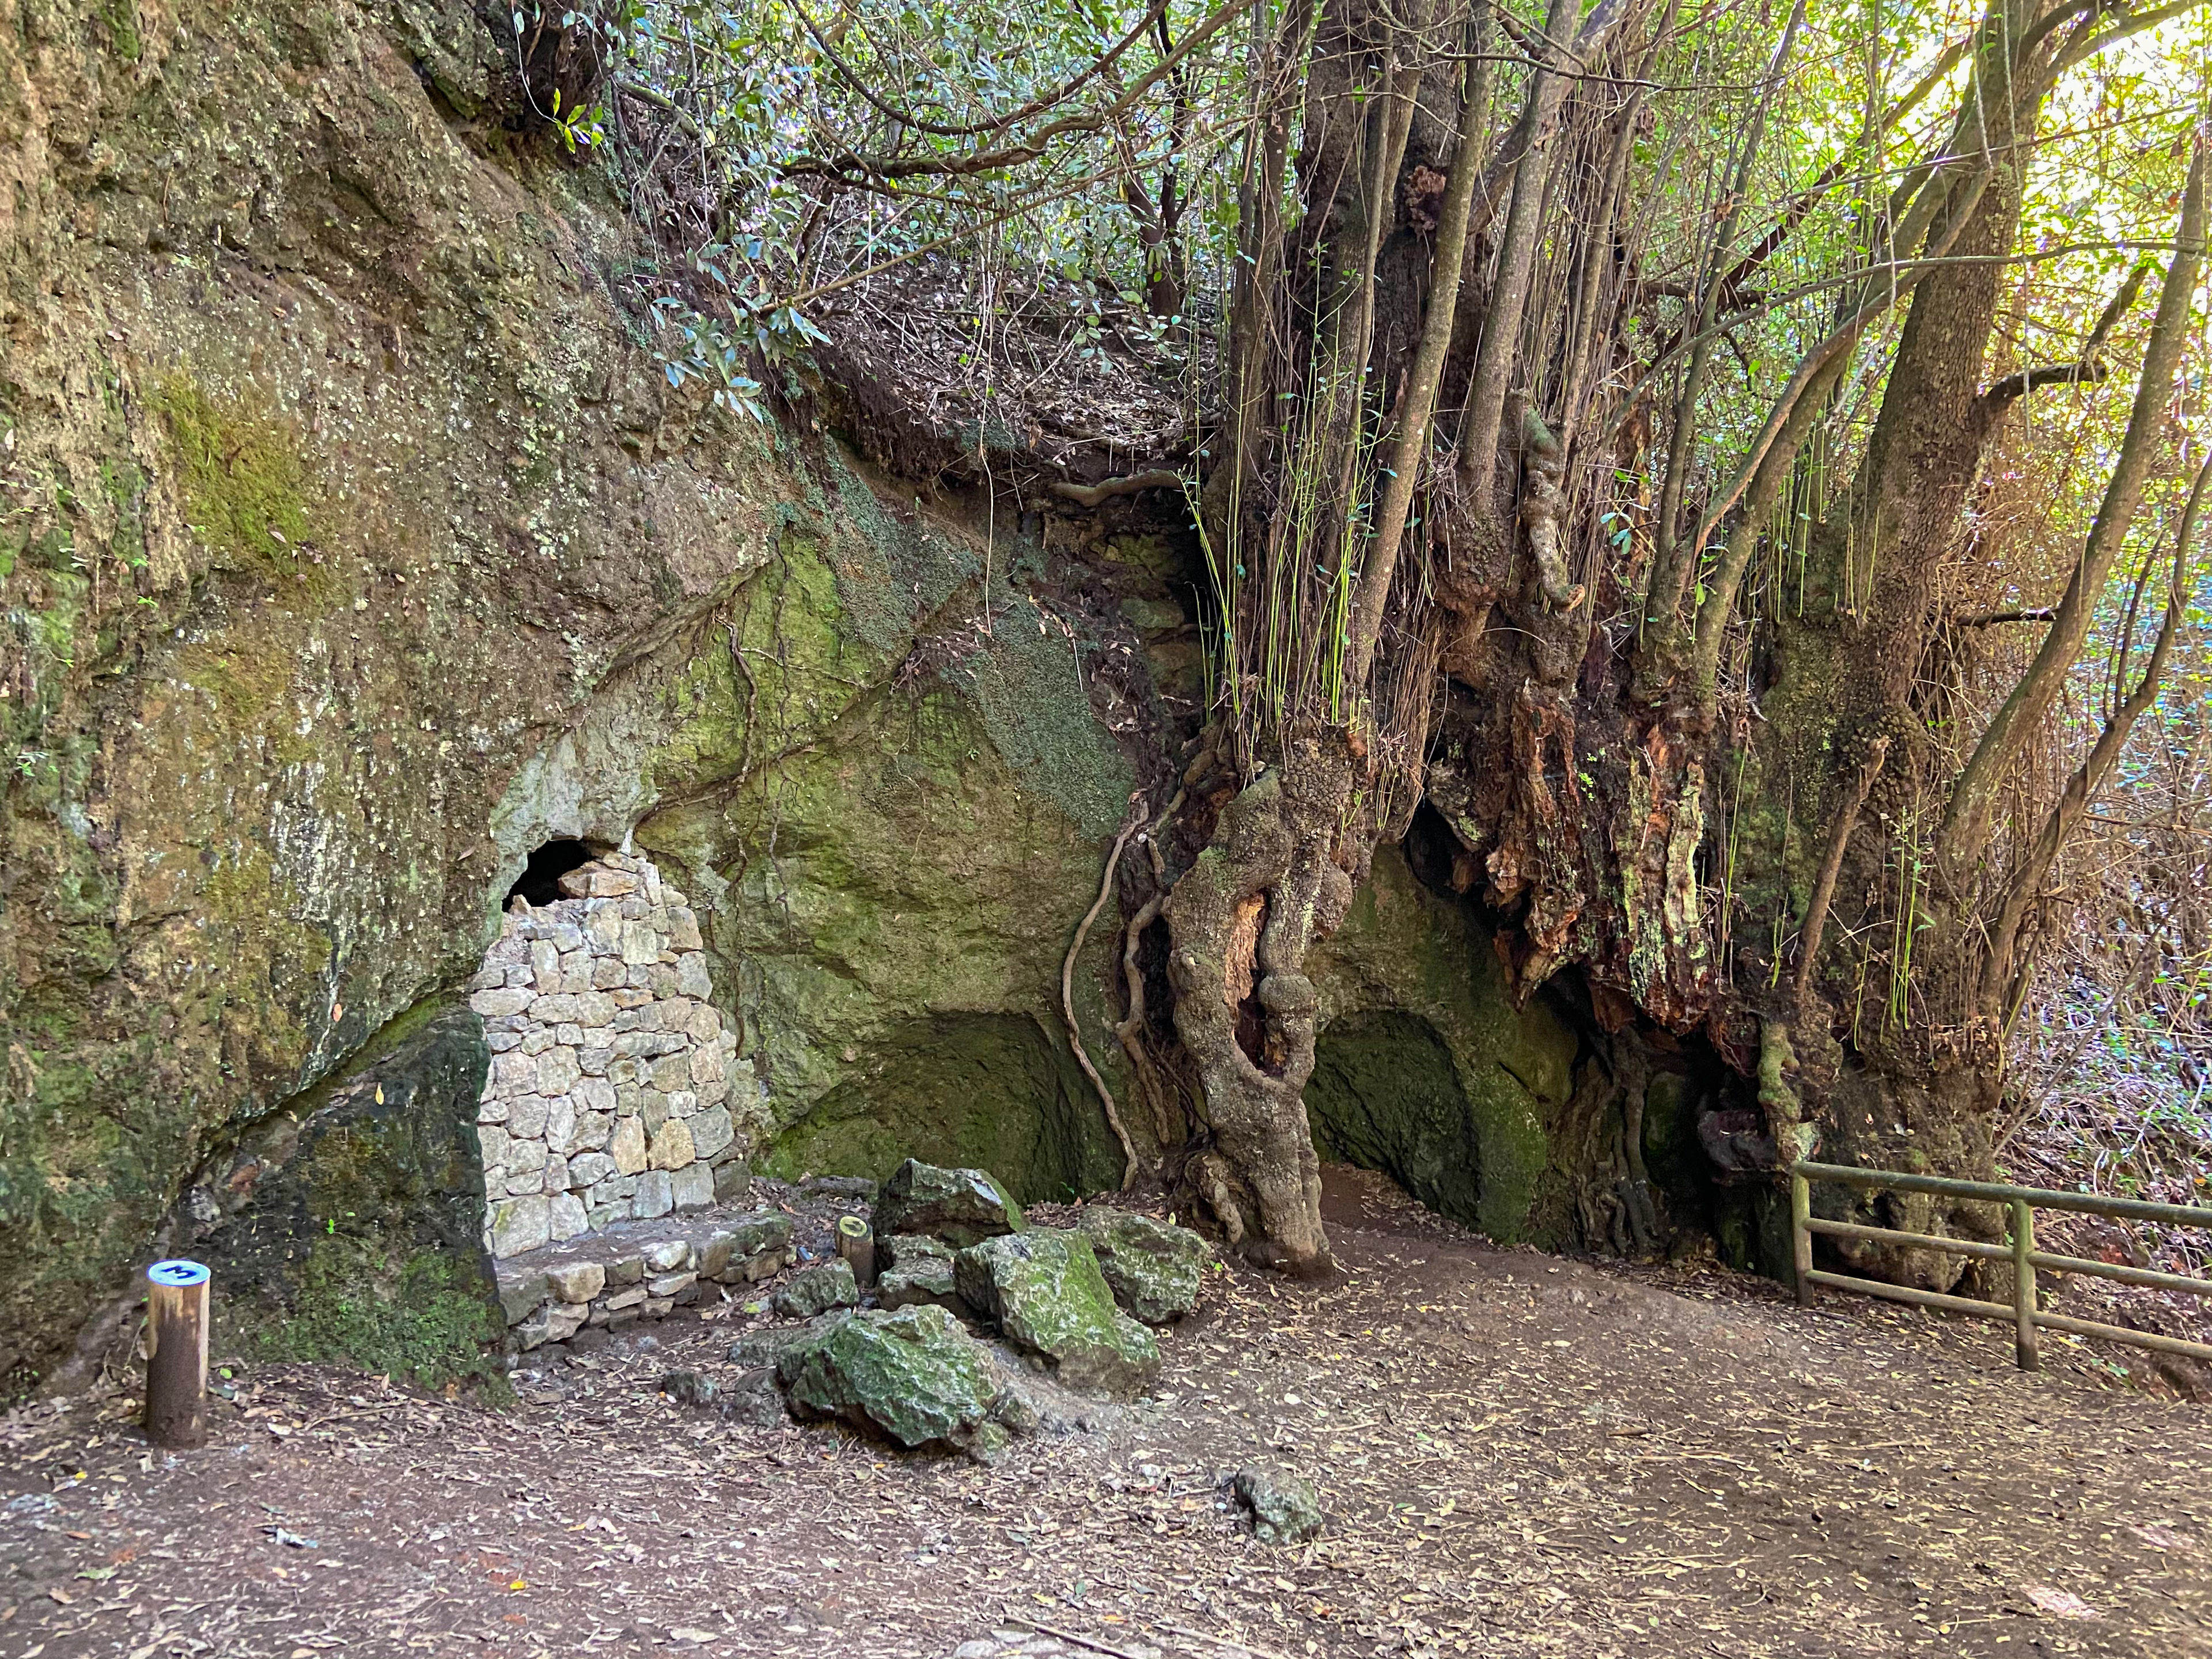 Senda y cueva amurallada en la ruta del Lomo de Jara